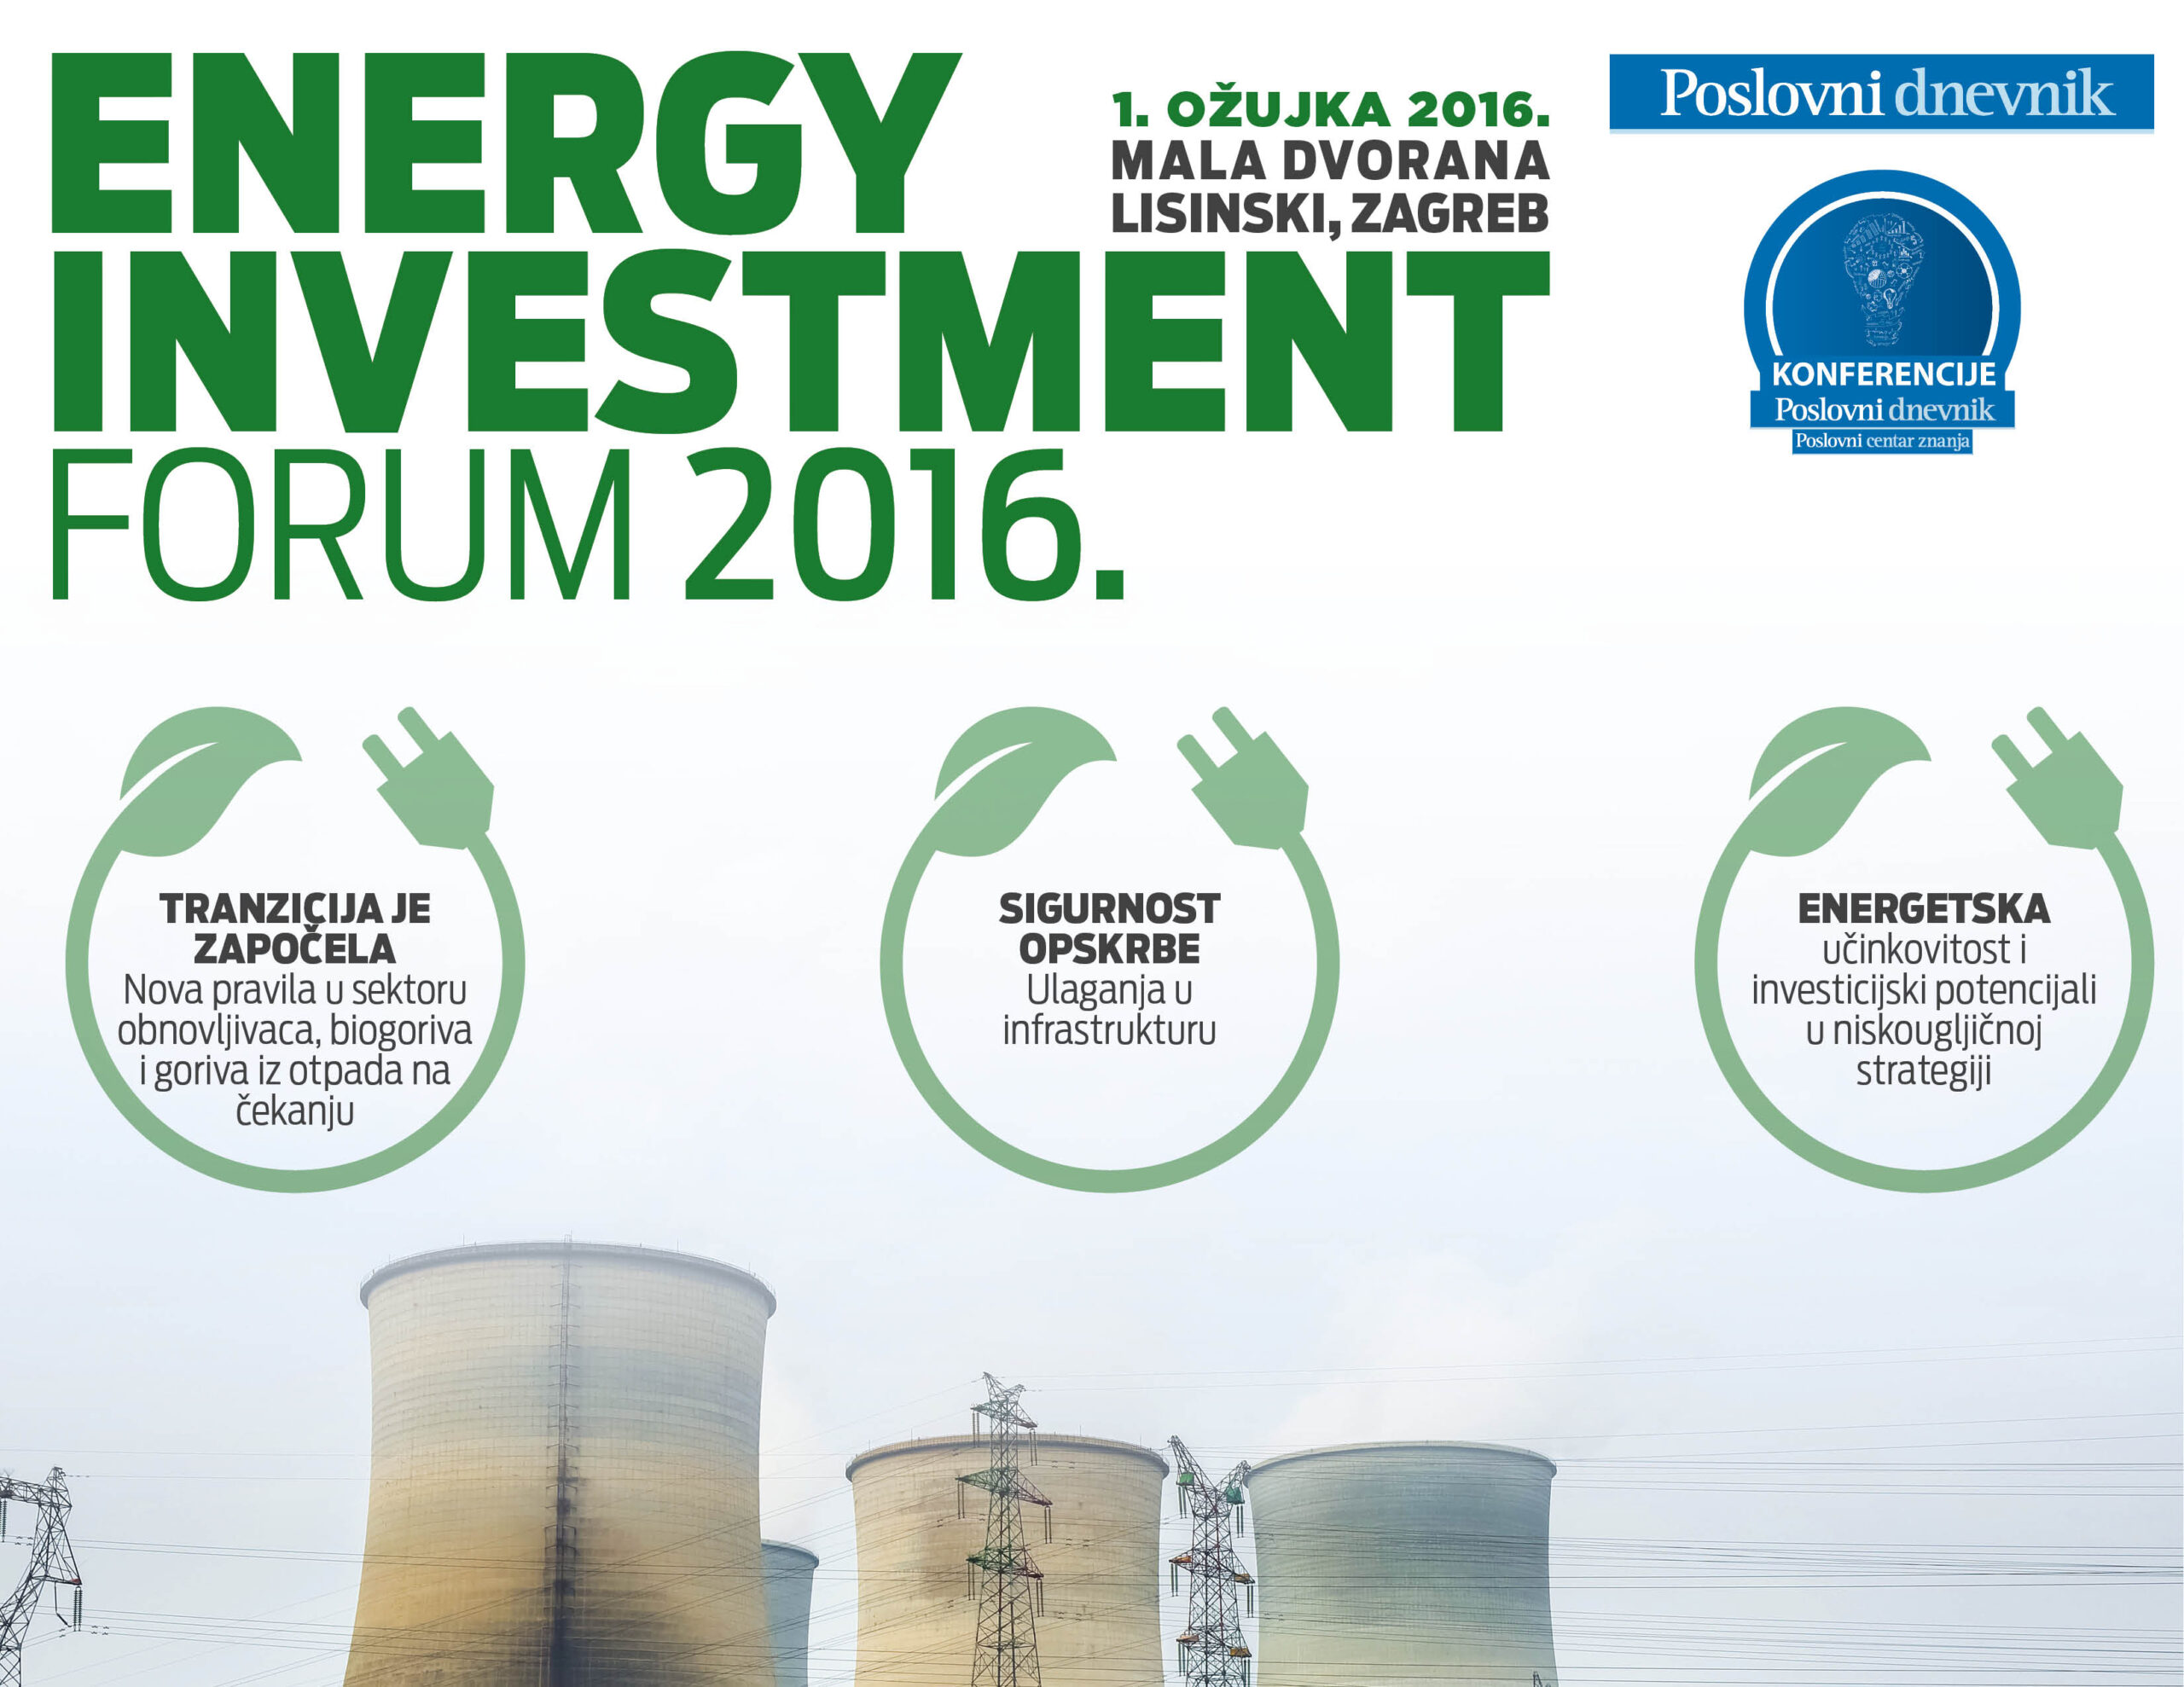 Energy investment forum 2016. – Potencijali ulaganja u energetskom sektoru